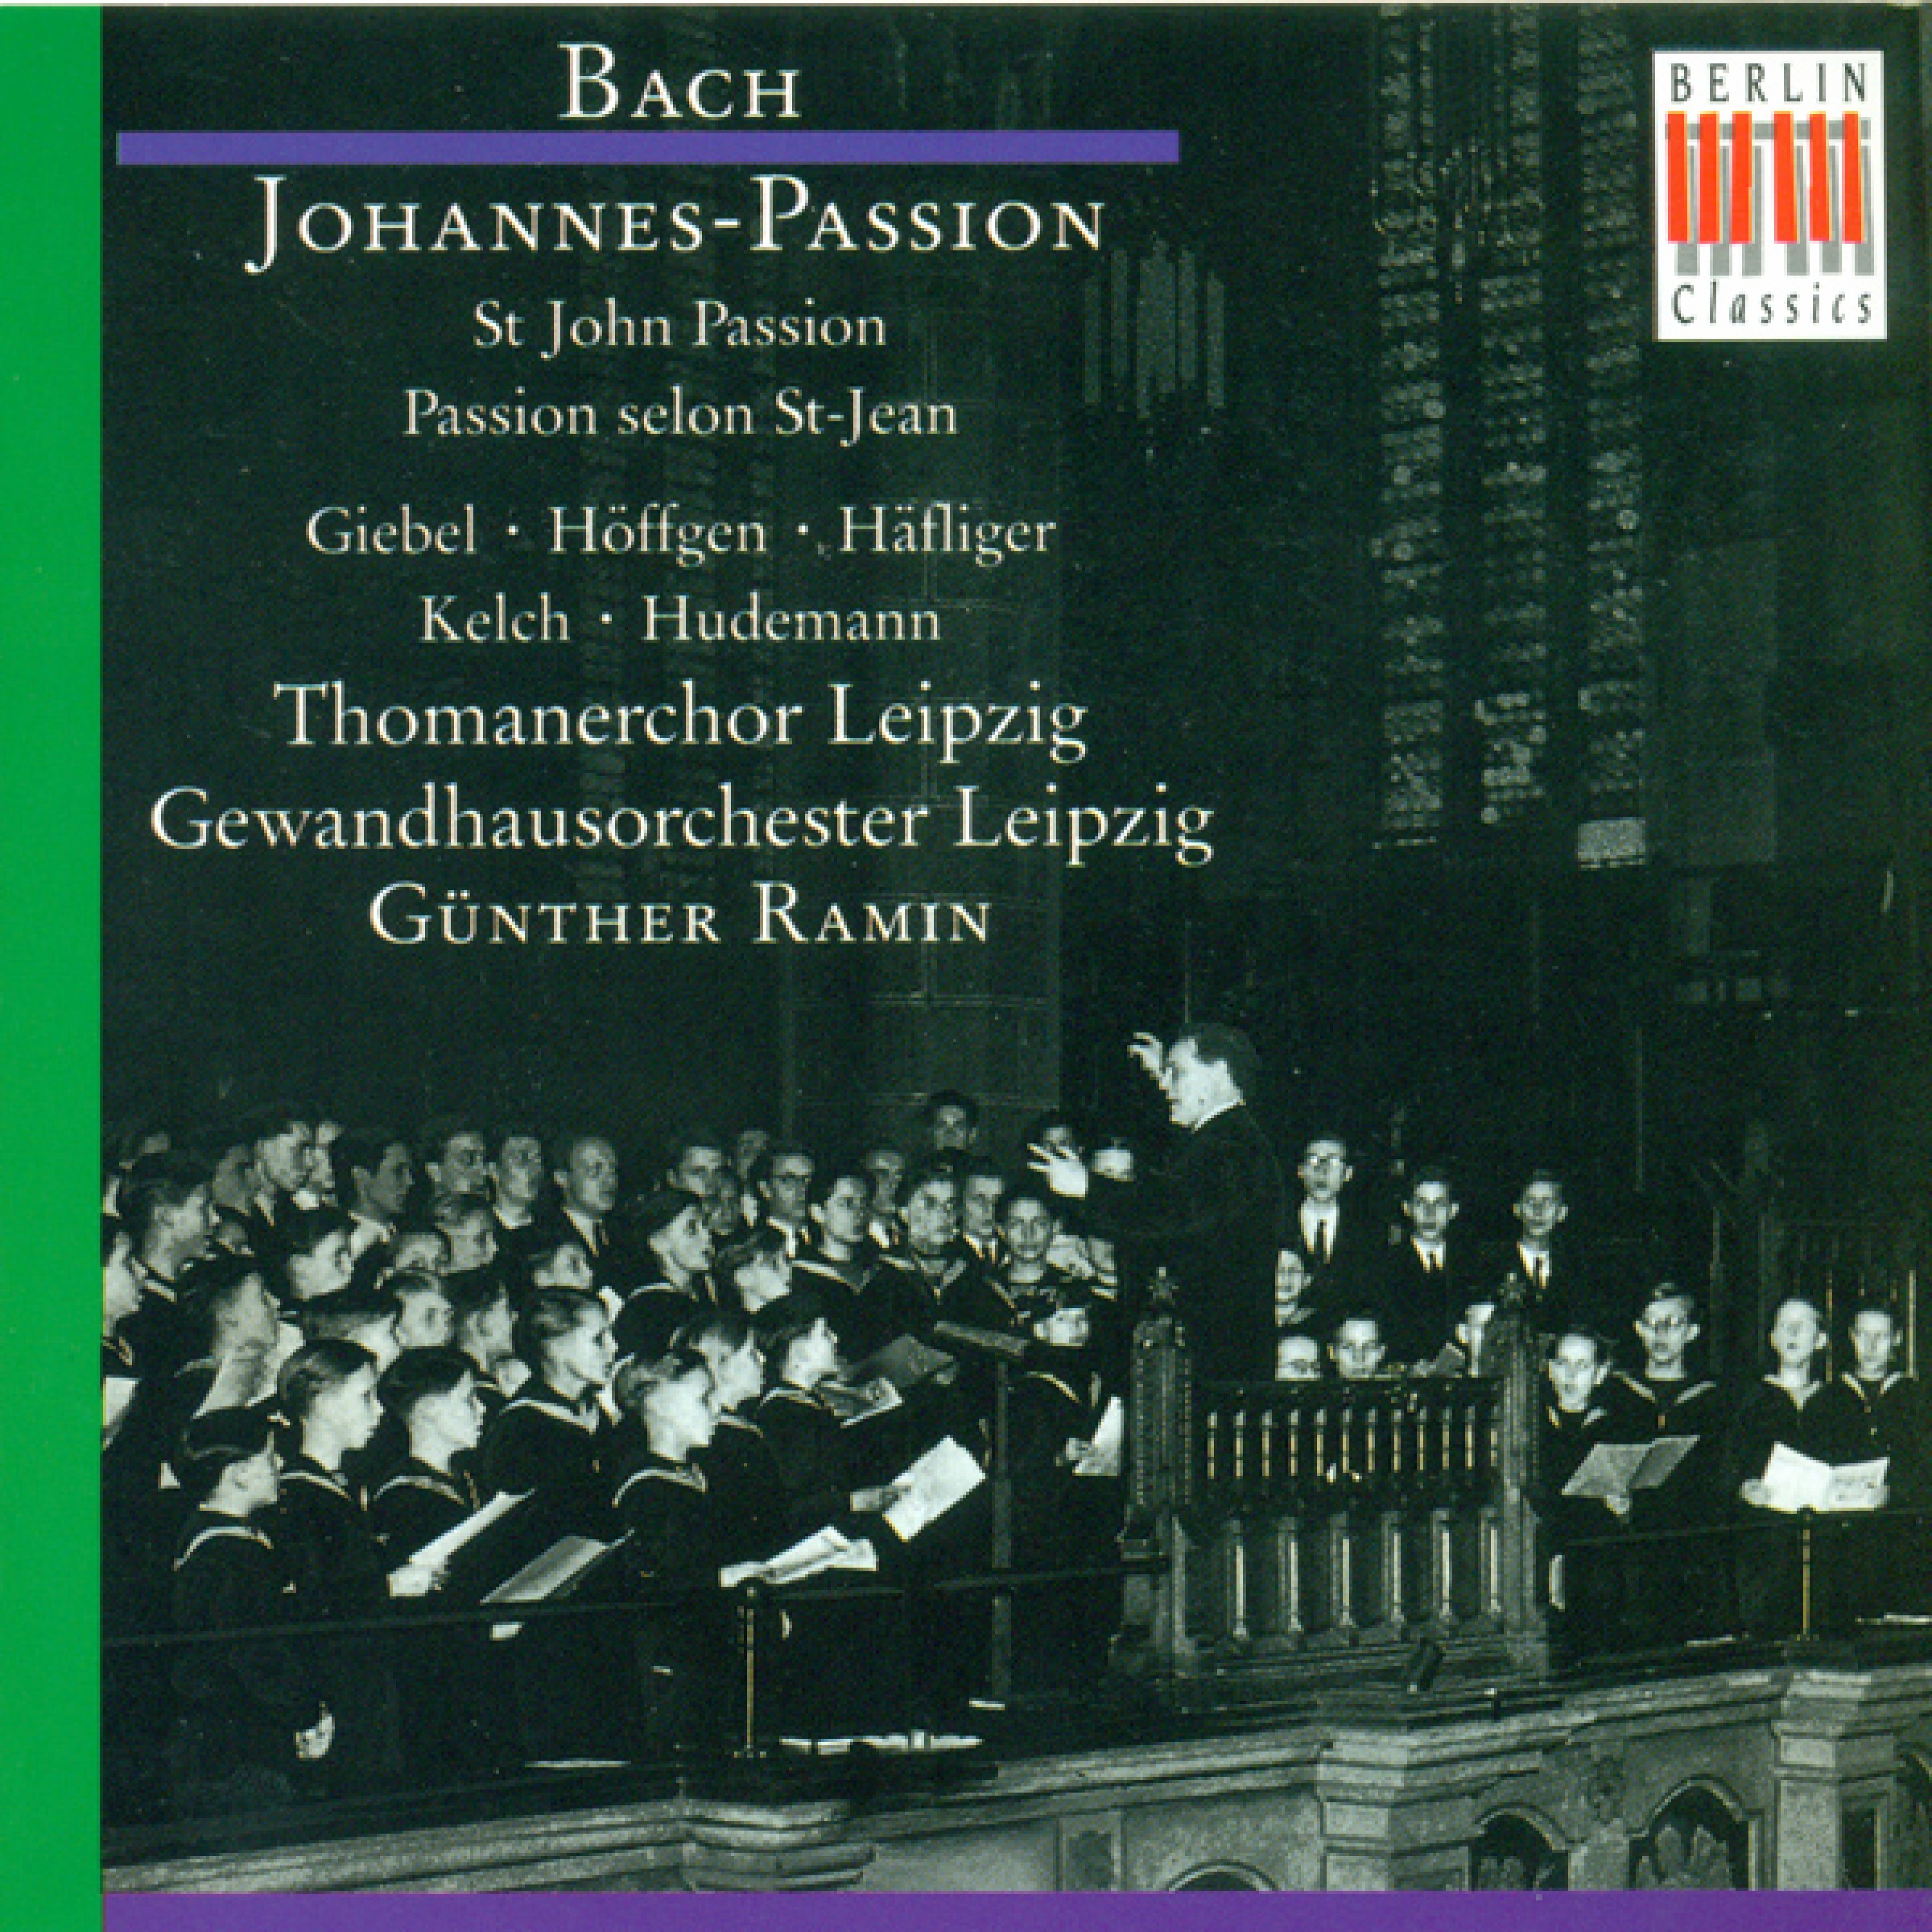 Johannes-Passion, BWV 245: Part I - "Und Hannas sandte ihn gebunden"